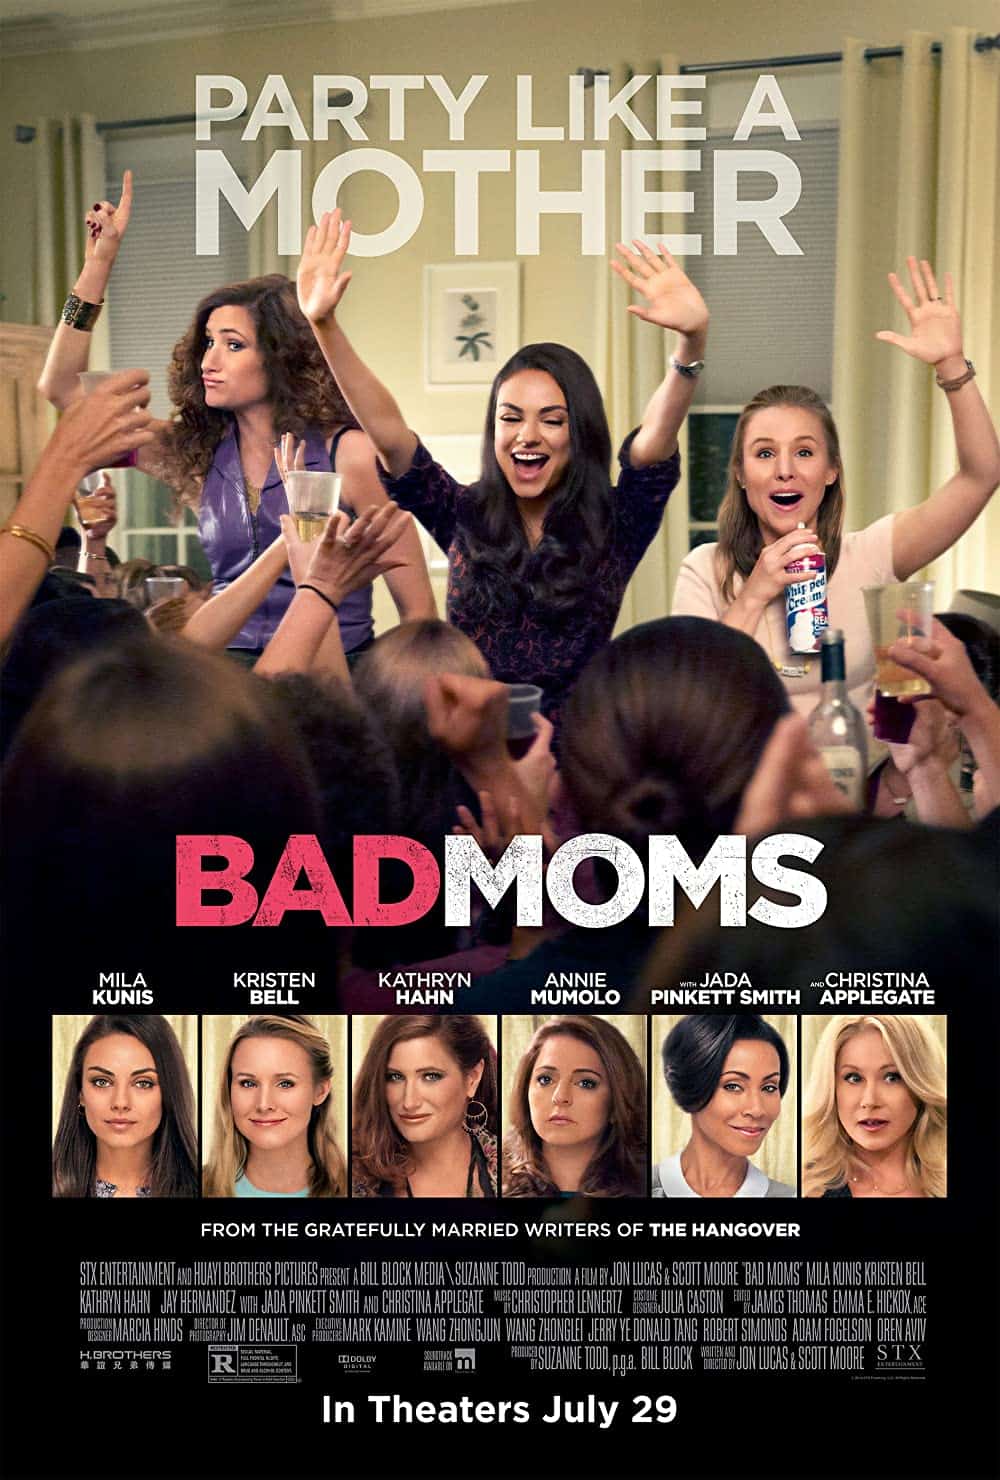 Hangover similar movies Bad Moms (2016) 